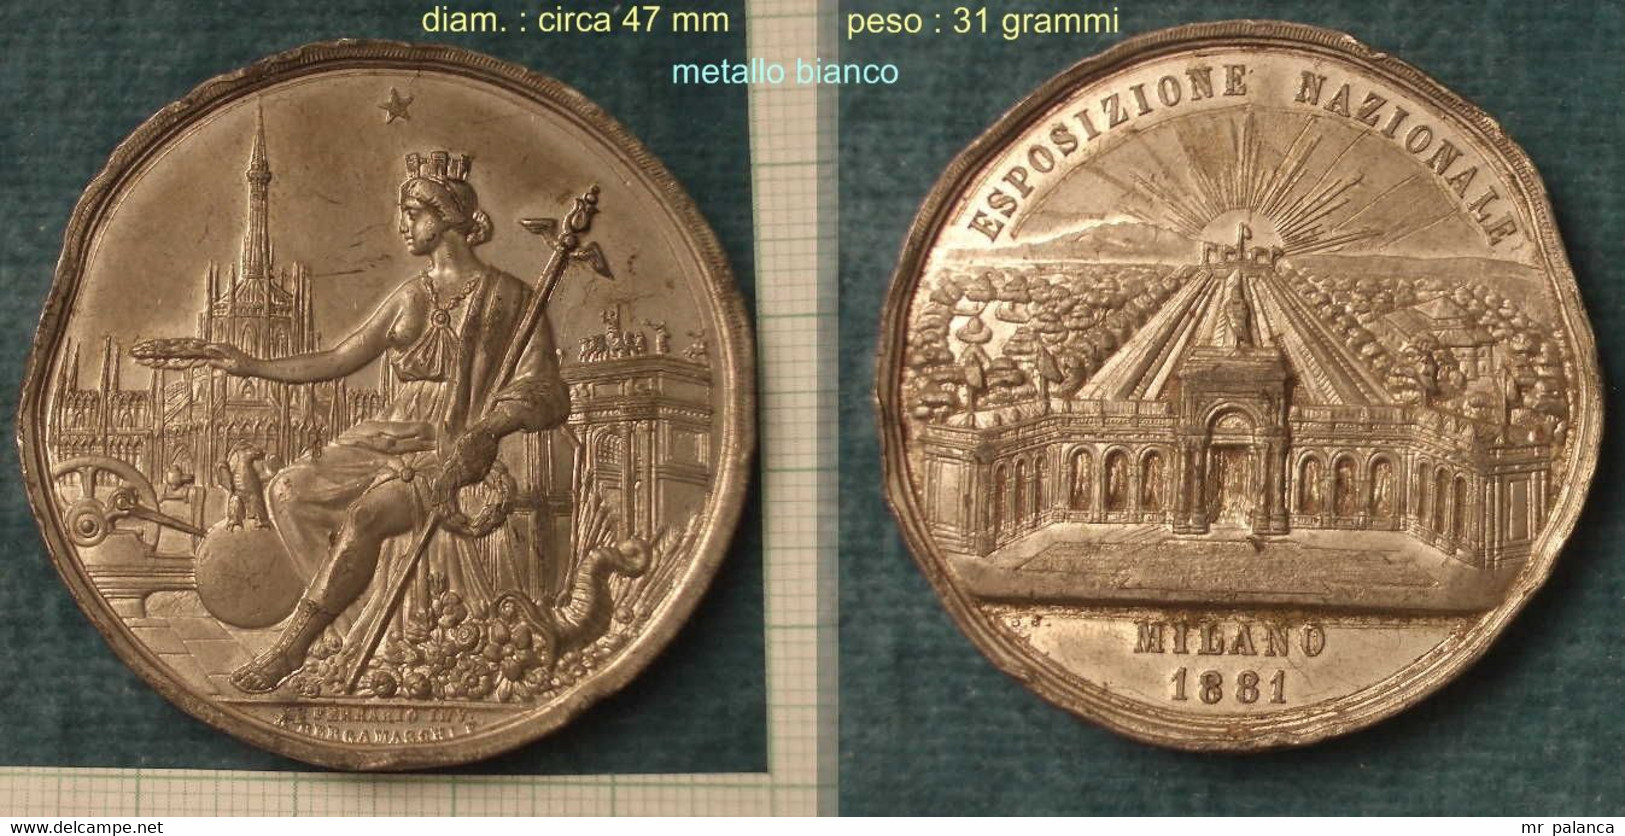 M_p> Medaglia " ESPOSIZIONE NAZIONALE MILANO 1881 " - Metallo Bianco - Diam. 47 Mm Peso 31 Grammi - Firma's